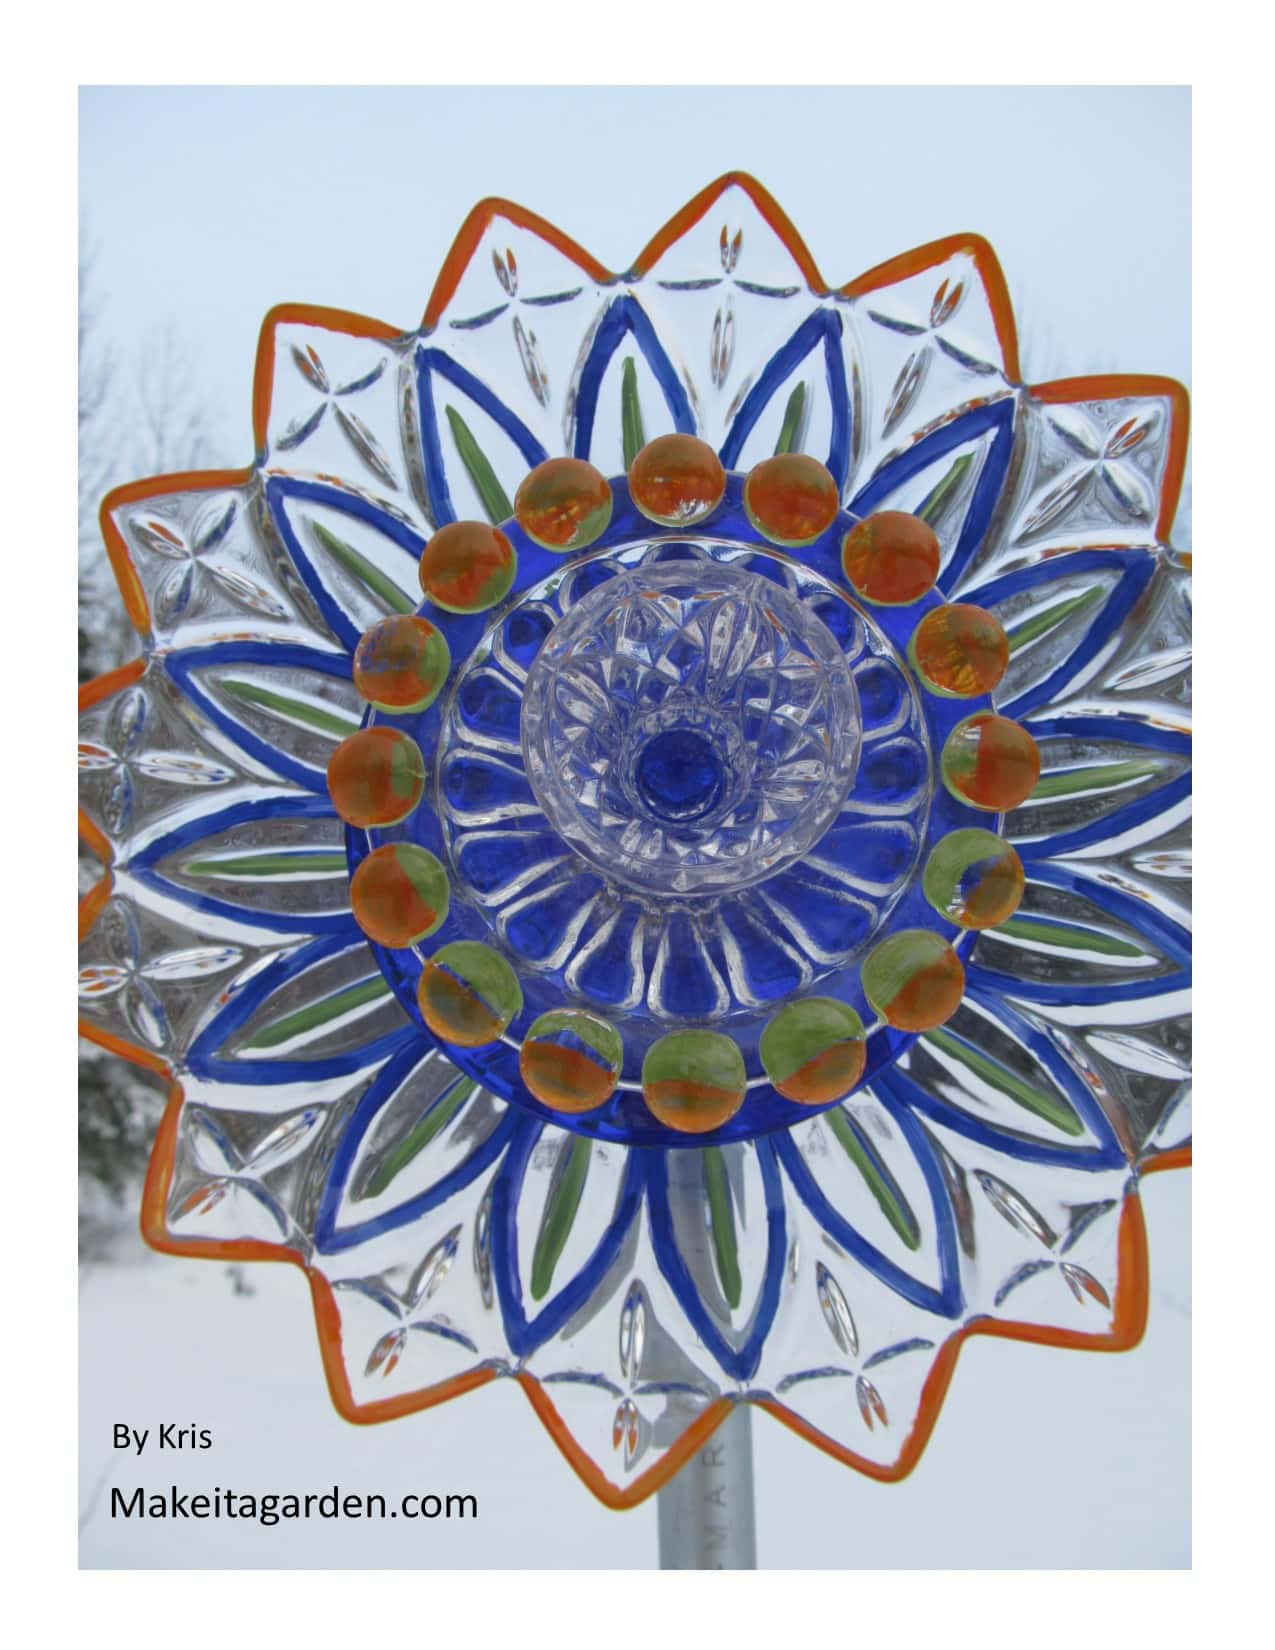 kwiat naczynia artysty. Śliczna szklana miseczka w kształcie kwiatka do malowania na szklanych talerzach